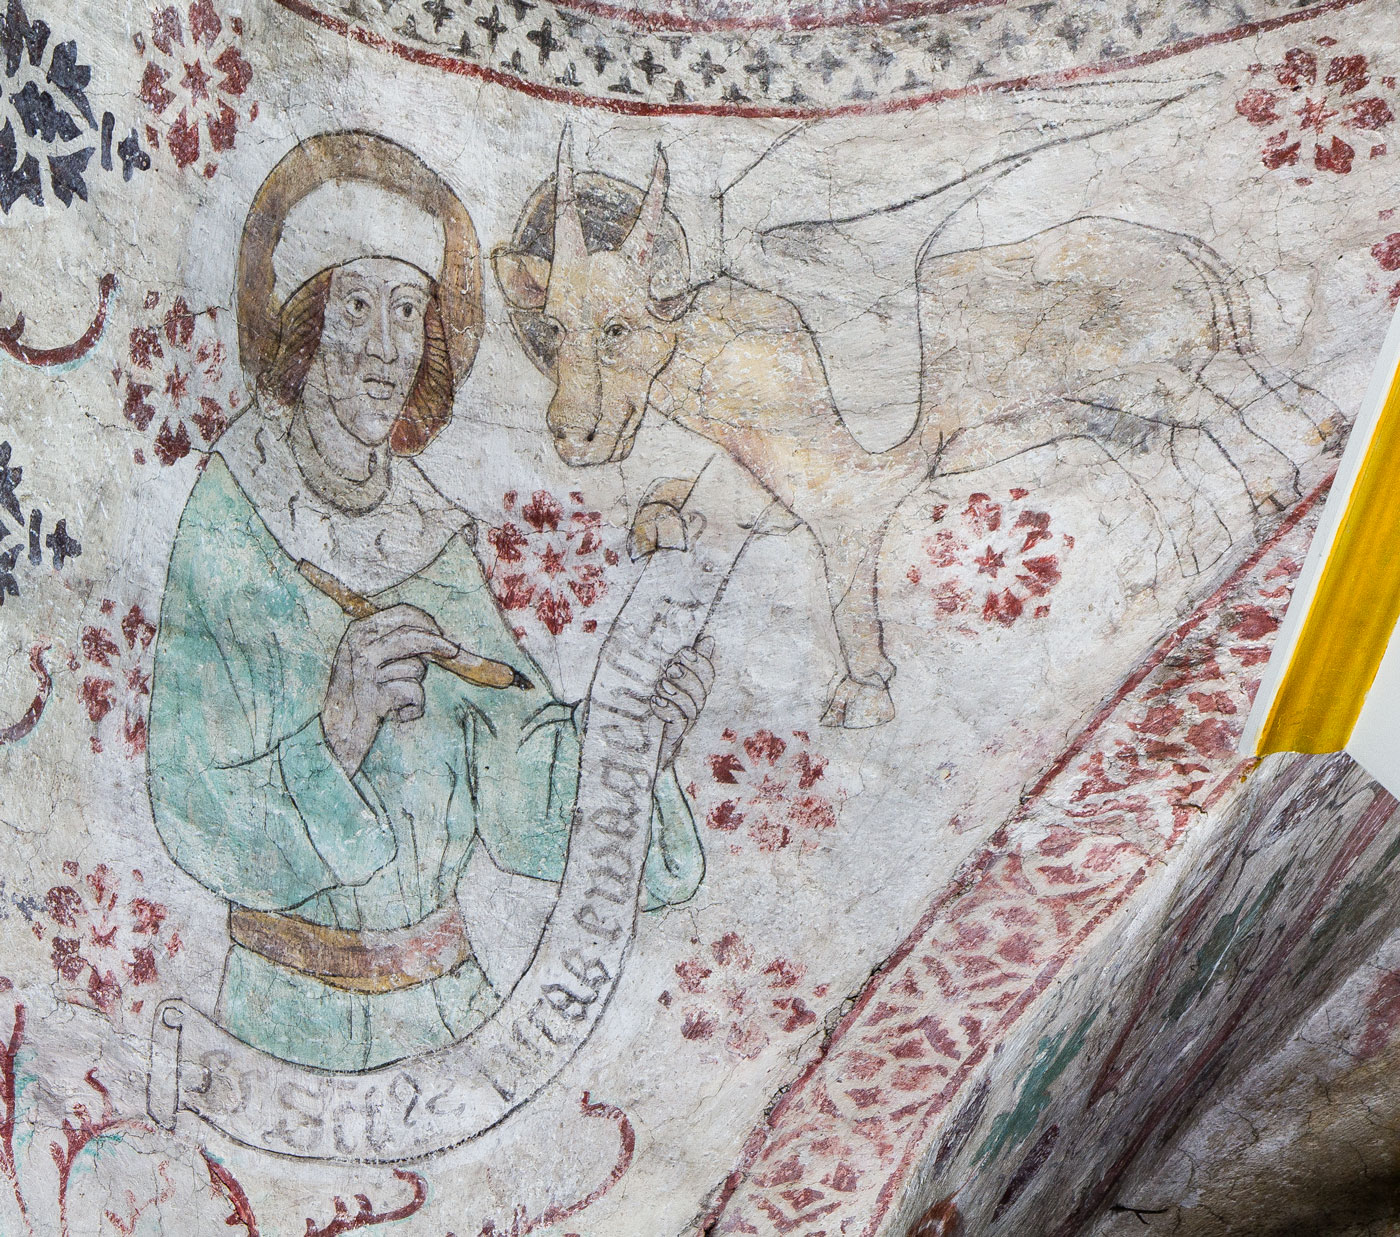 Evangelisten Lukas med sin symbol, oxen (S) - Almunge kyrka